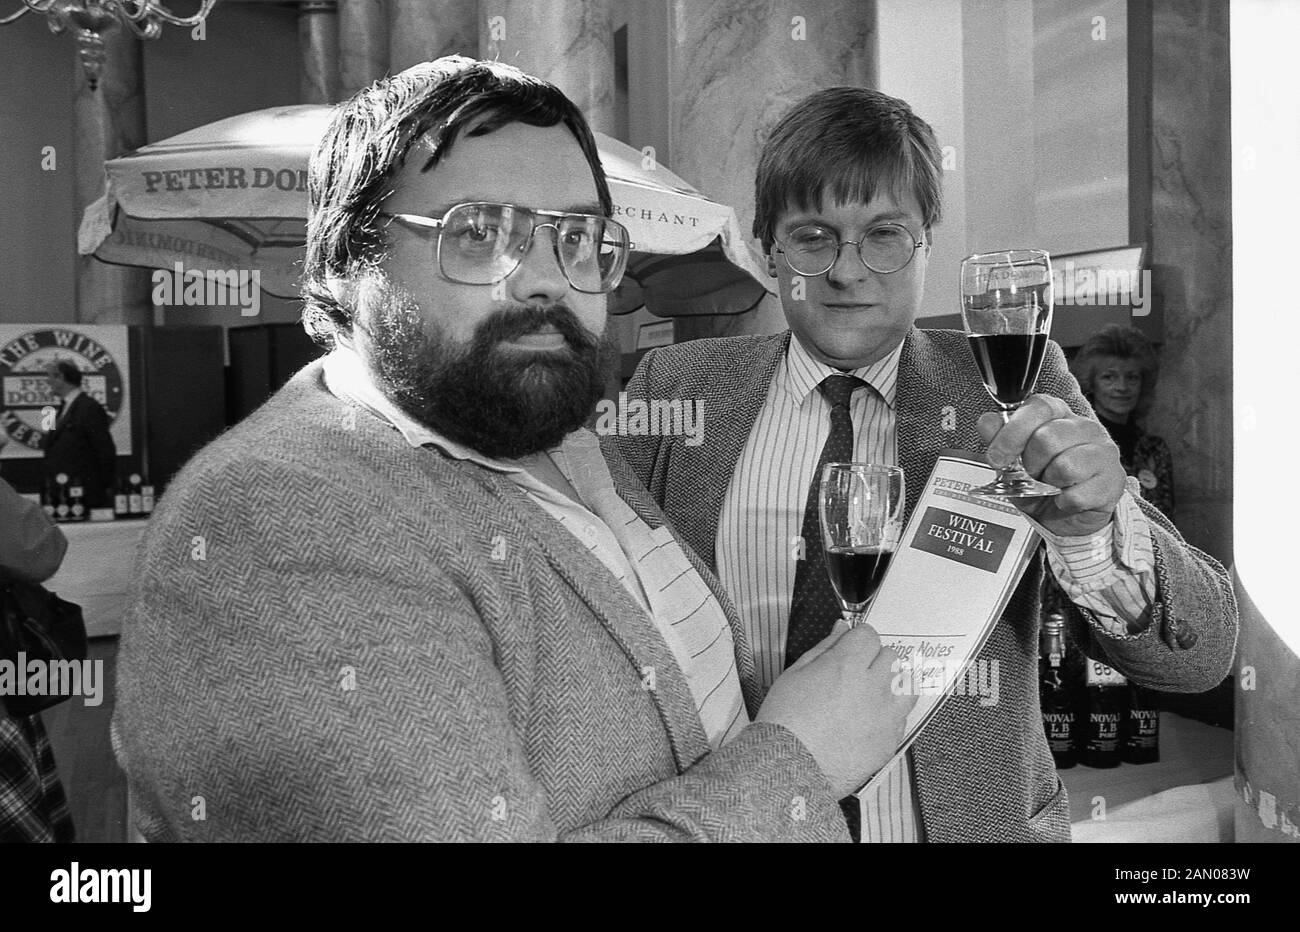 1988, storico, due uomini che tengono i bicchieri di vino rosso all'interno di una sala a una festa del vino, Inghilterra, Regno Unito. Foto Stock